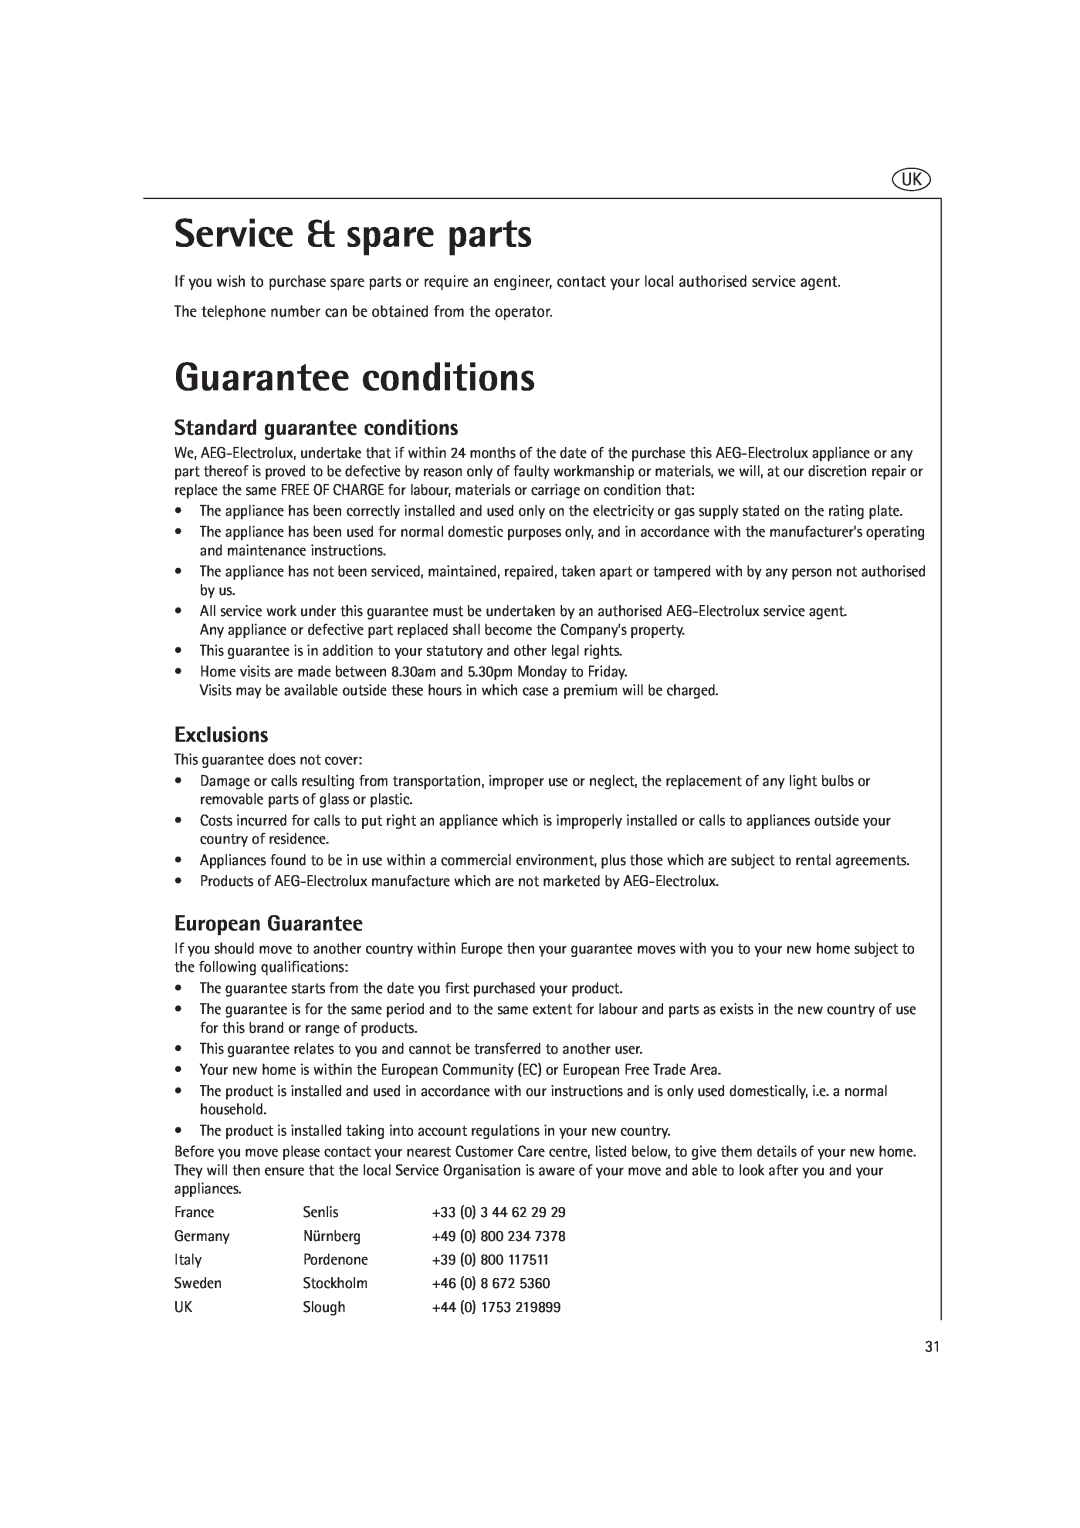 AEG MC2661E Service & spare parts, Guarantee conditions, Standard guarantee conditions, Exclusions, European Guarantee 